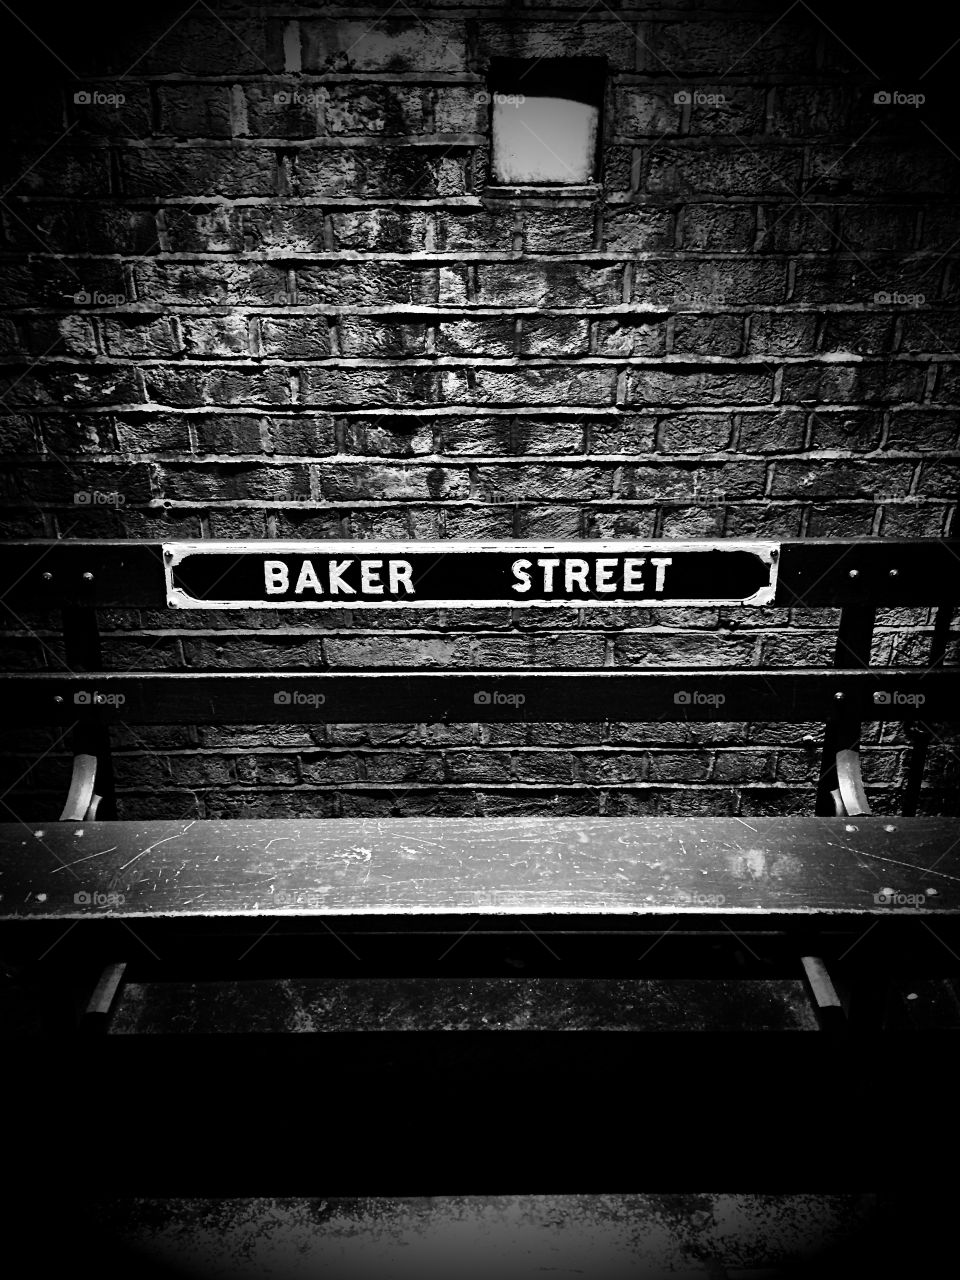 Baker Street Bench